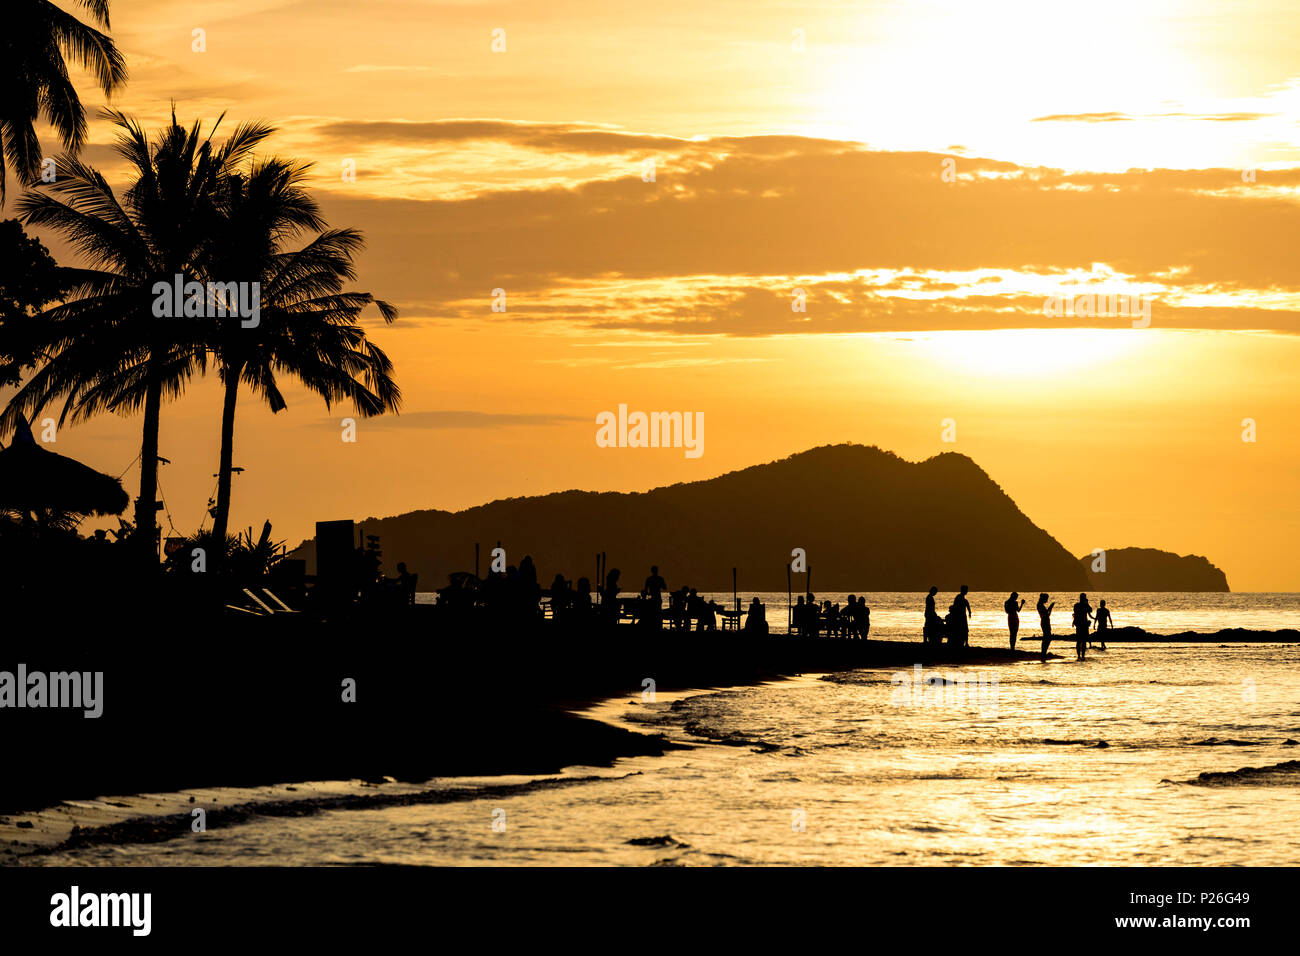 Las Cabanas Beach at sunset, El Nido, Palawan, Philippines Stock Photo